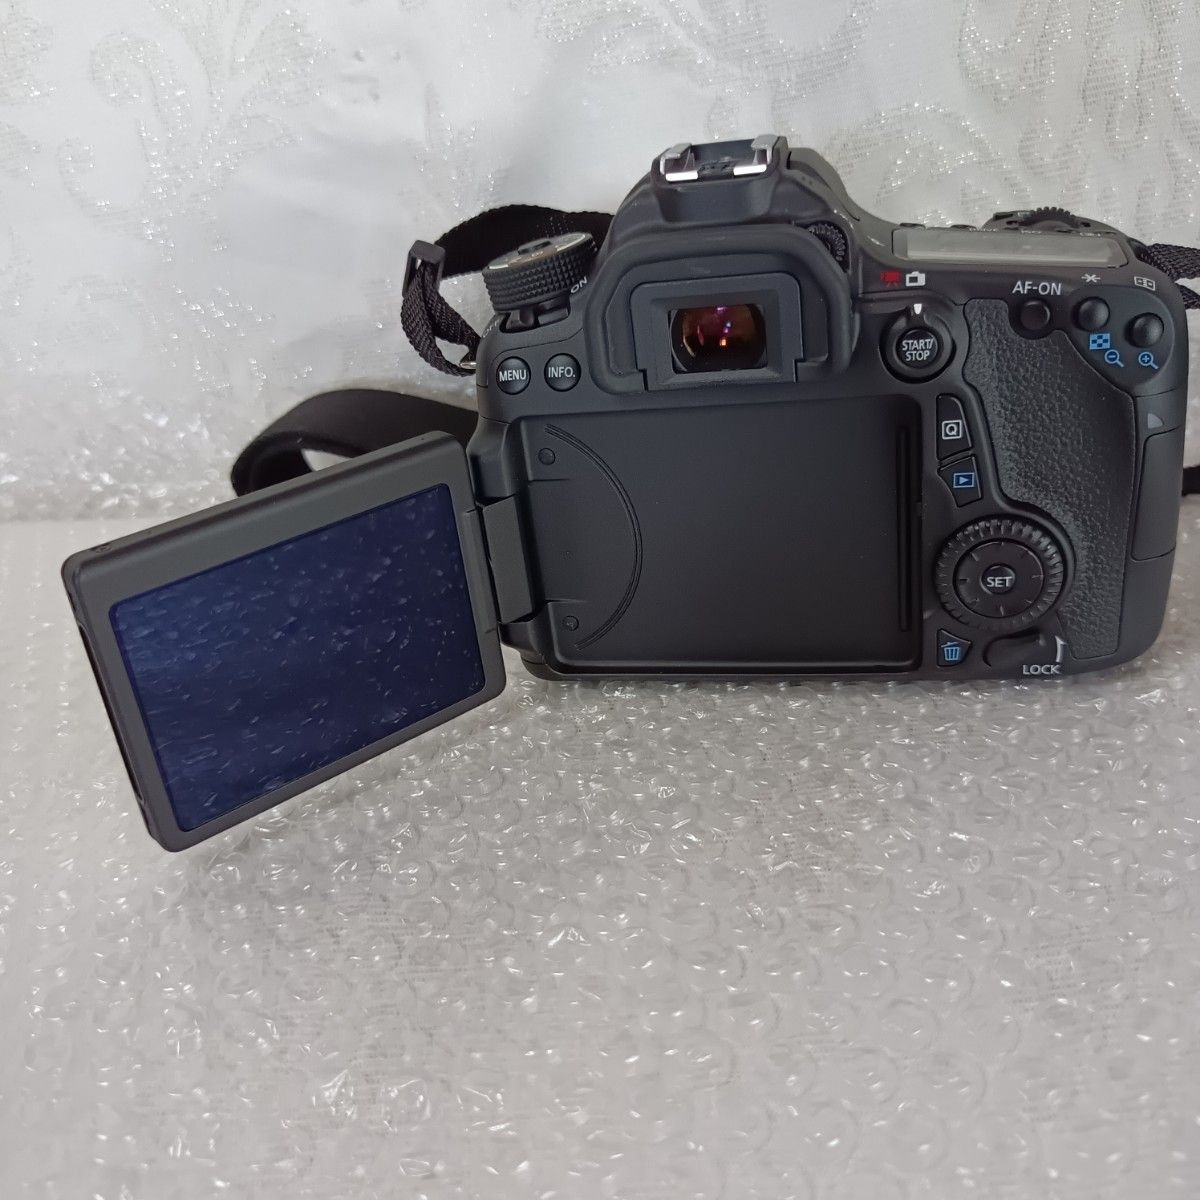 Canon キヤノン デジタル一眼レフカメラ EOS70D ボディ、ネックストラップ、充電器、バッテリー、DS510101